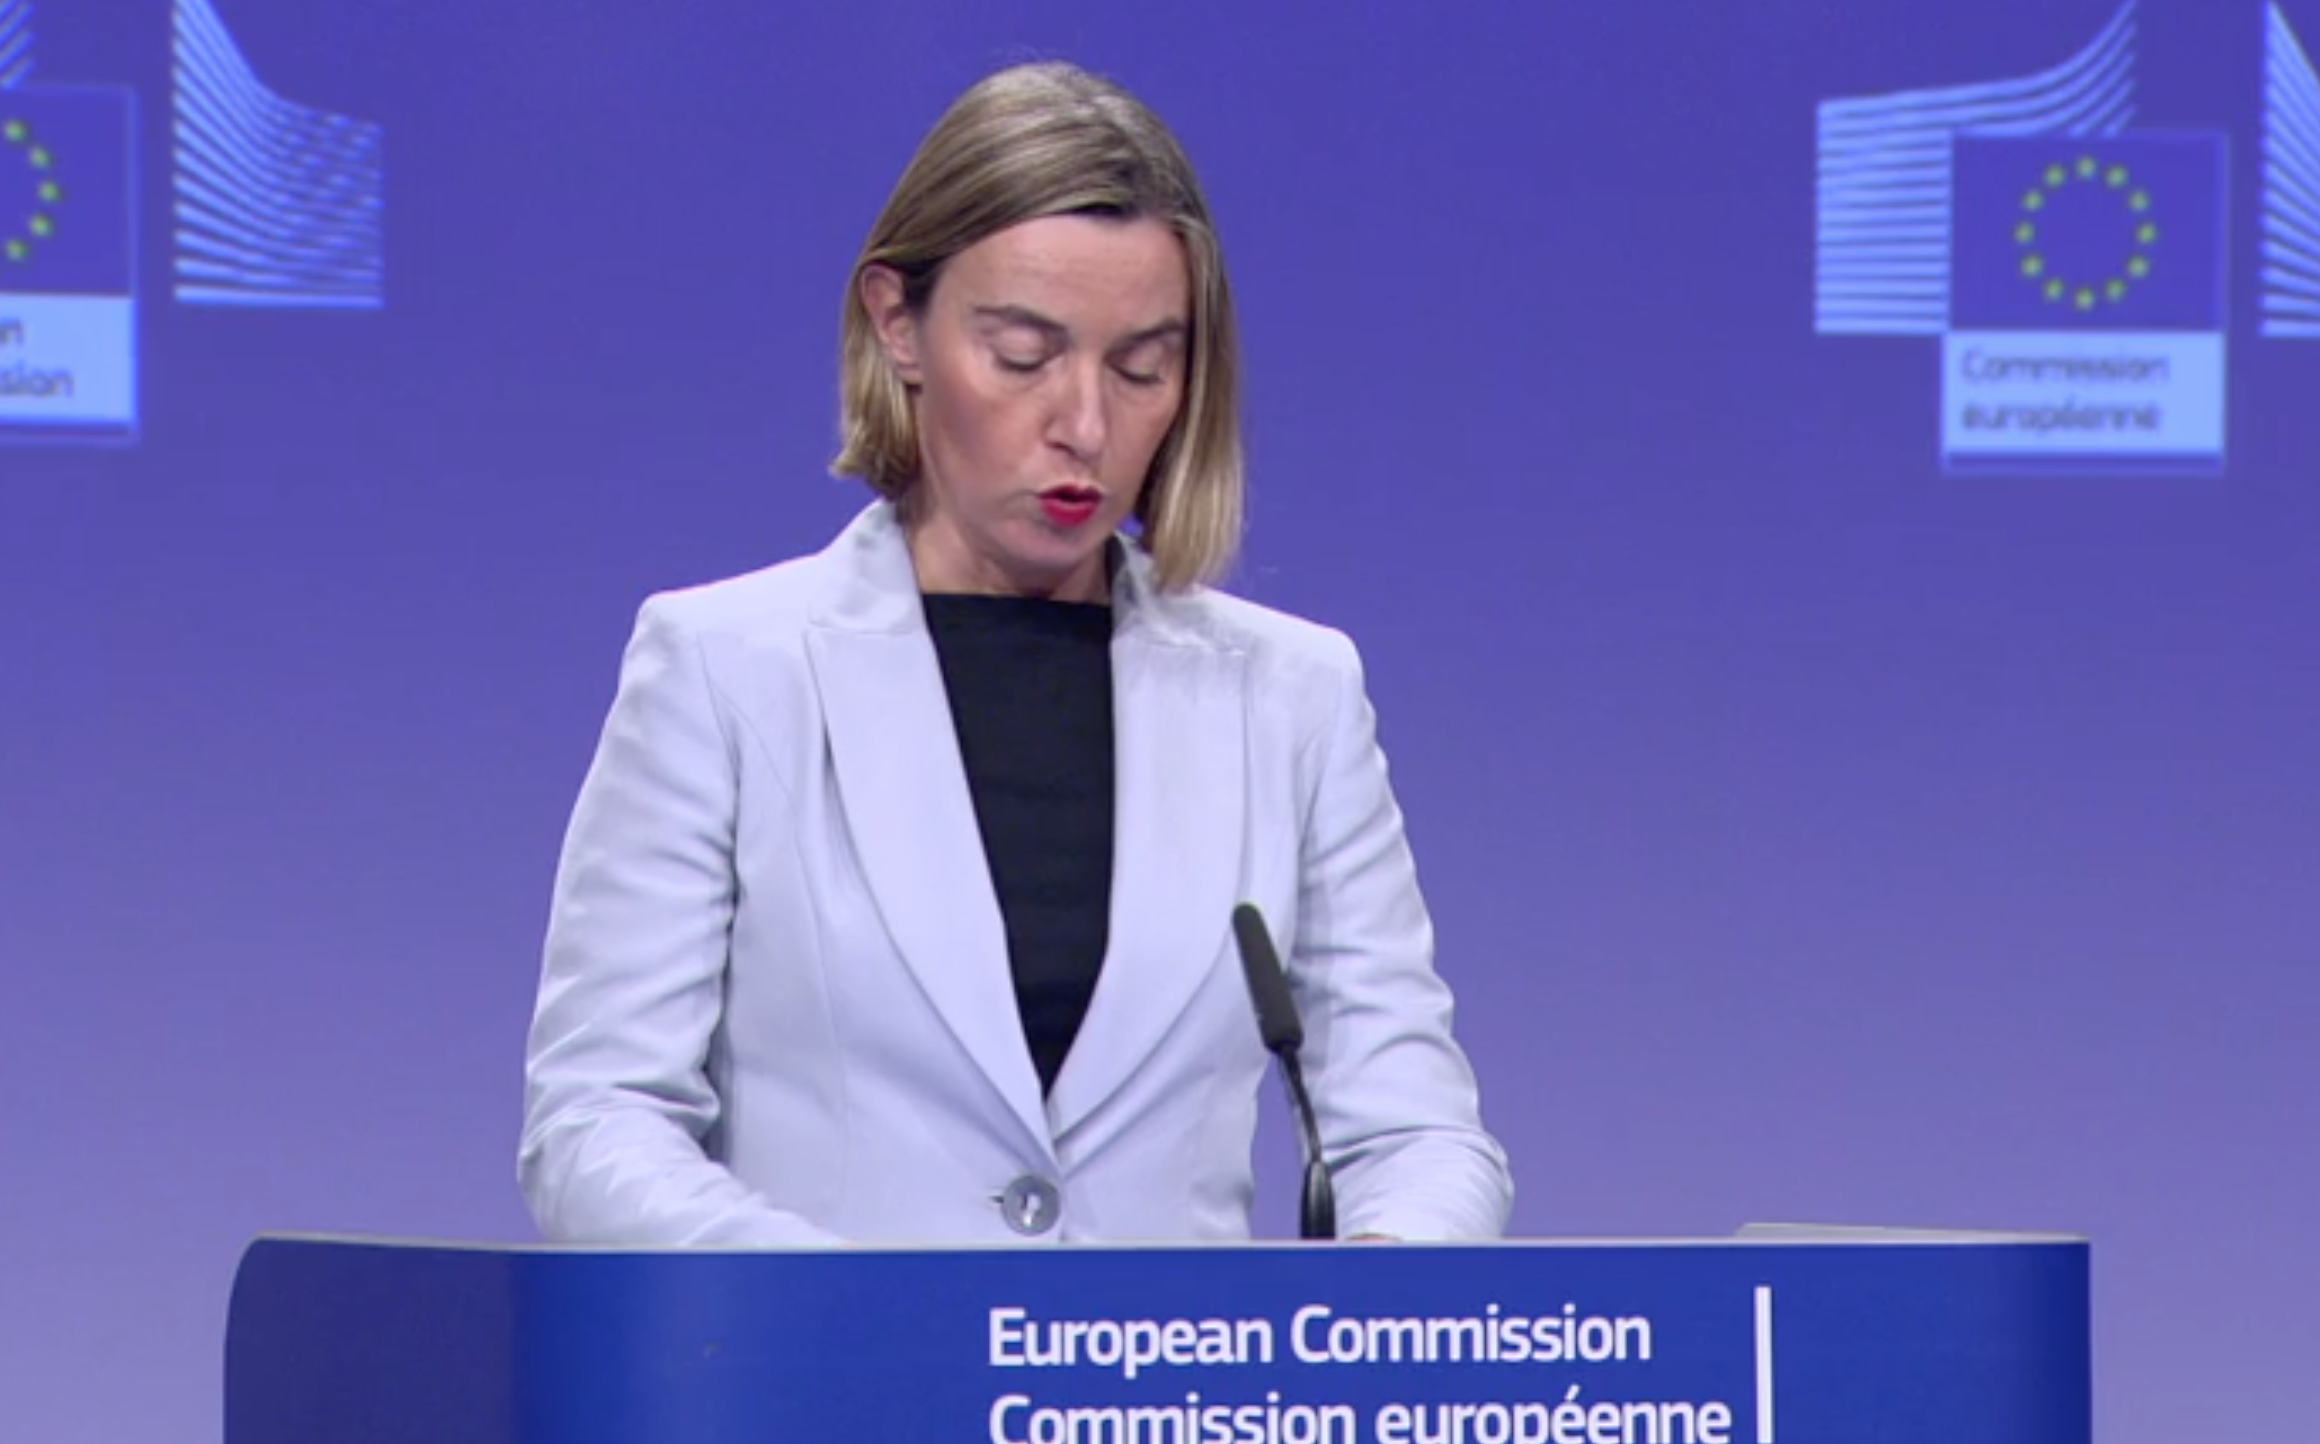 EU High Representative of the Union for Foreign Affairs Federica Mogherini